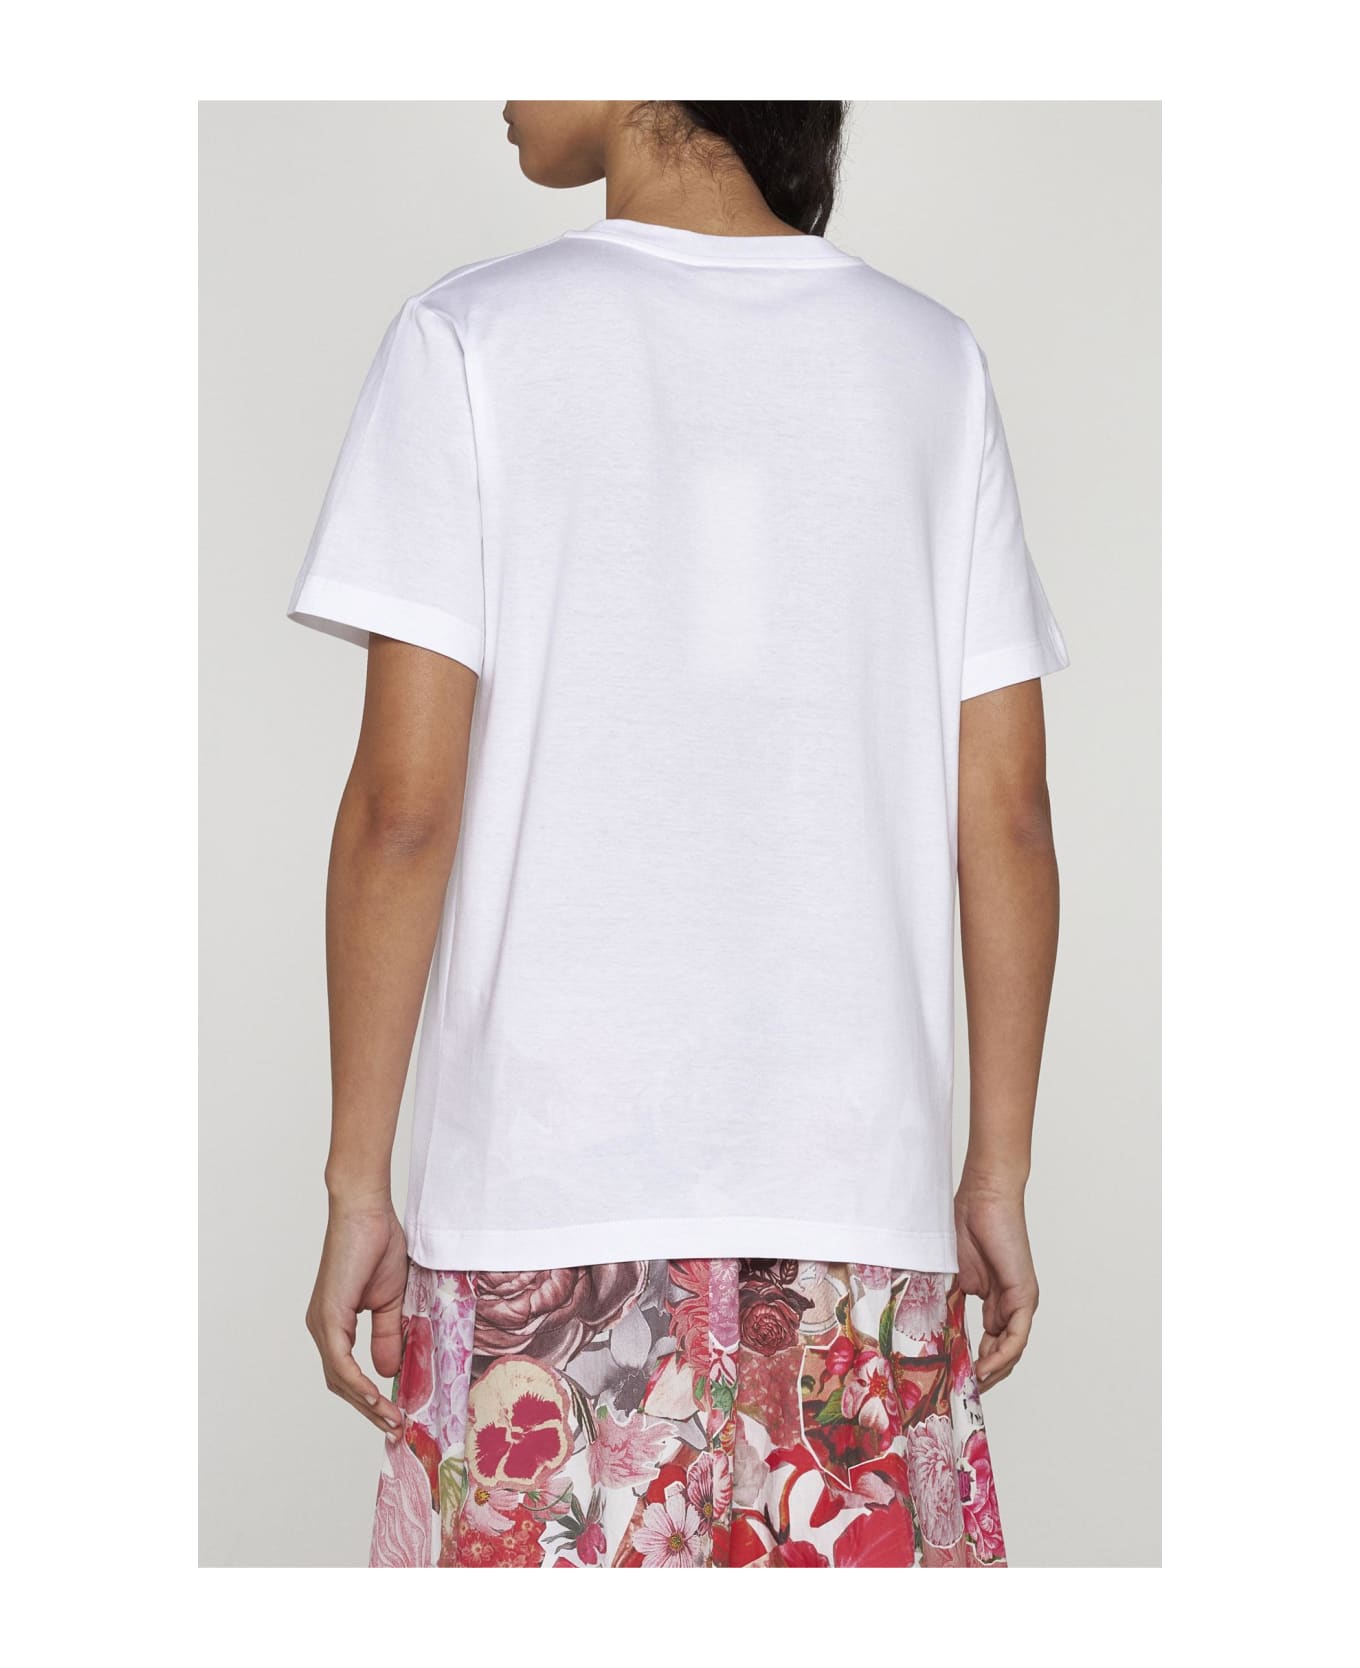 Marni Print Cotton T-shirt - White